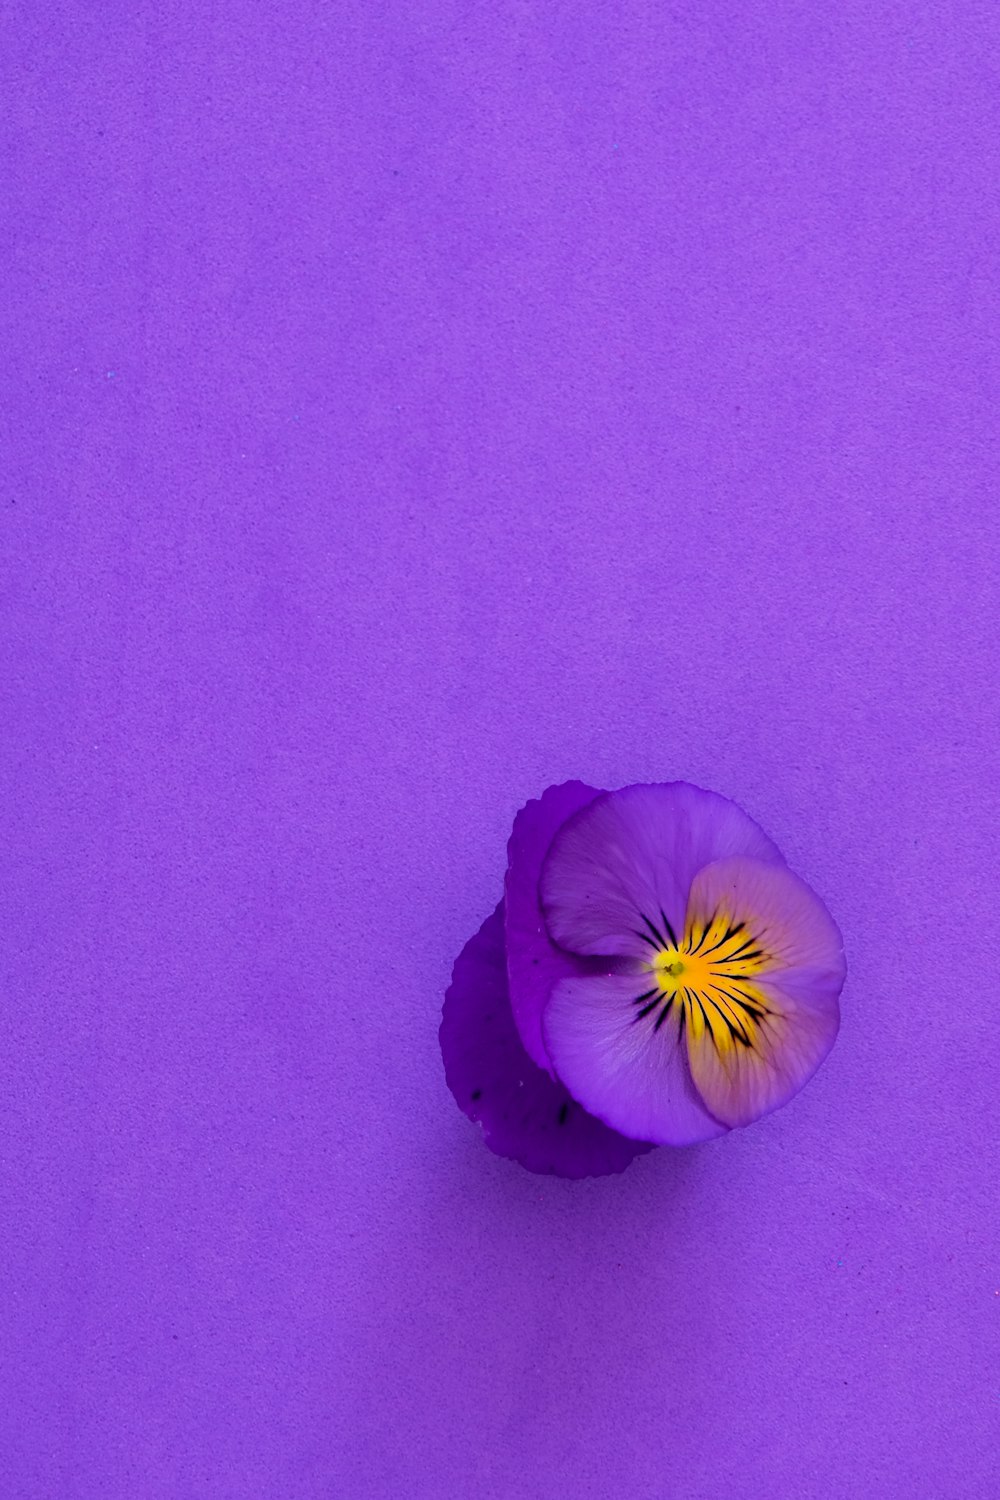 purple flower on purple textile